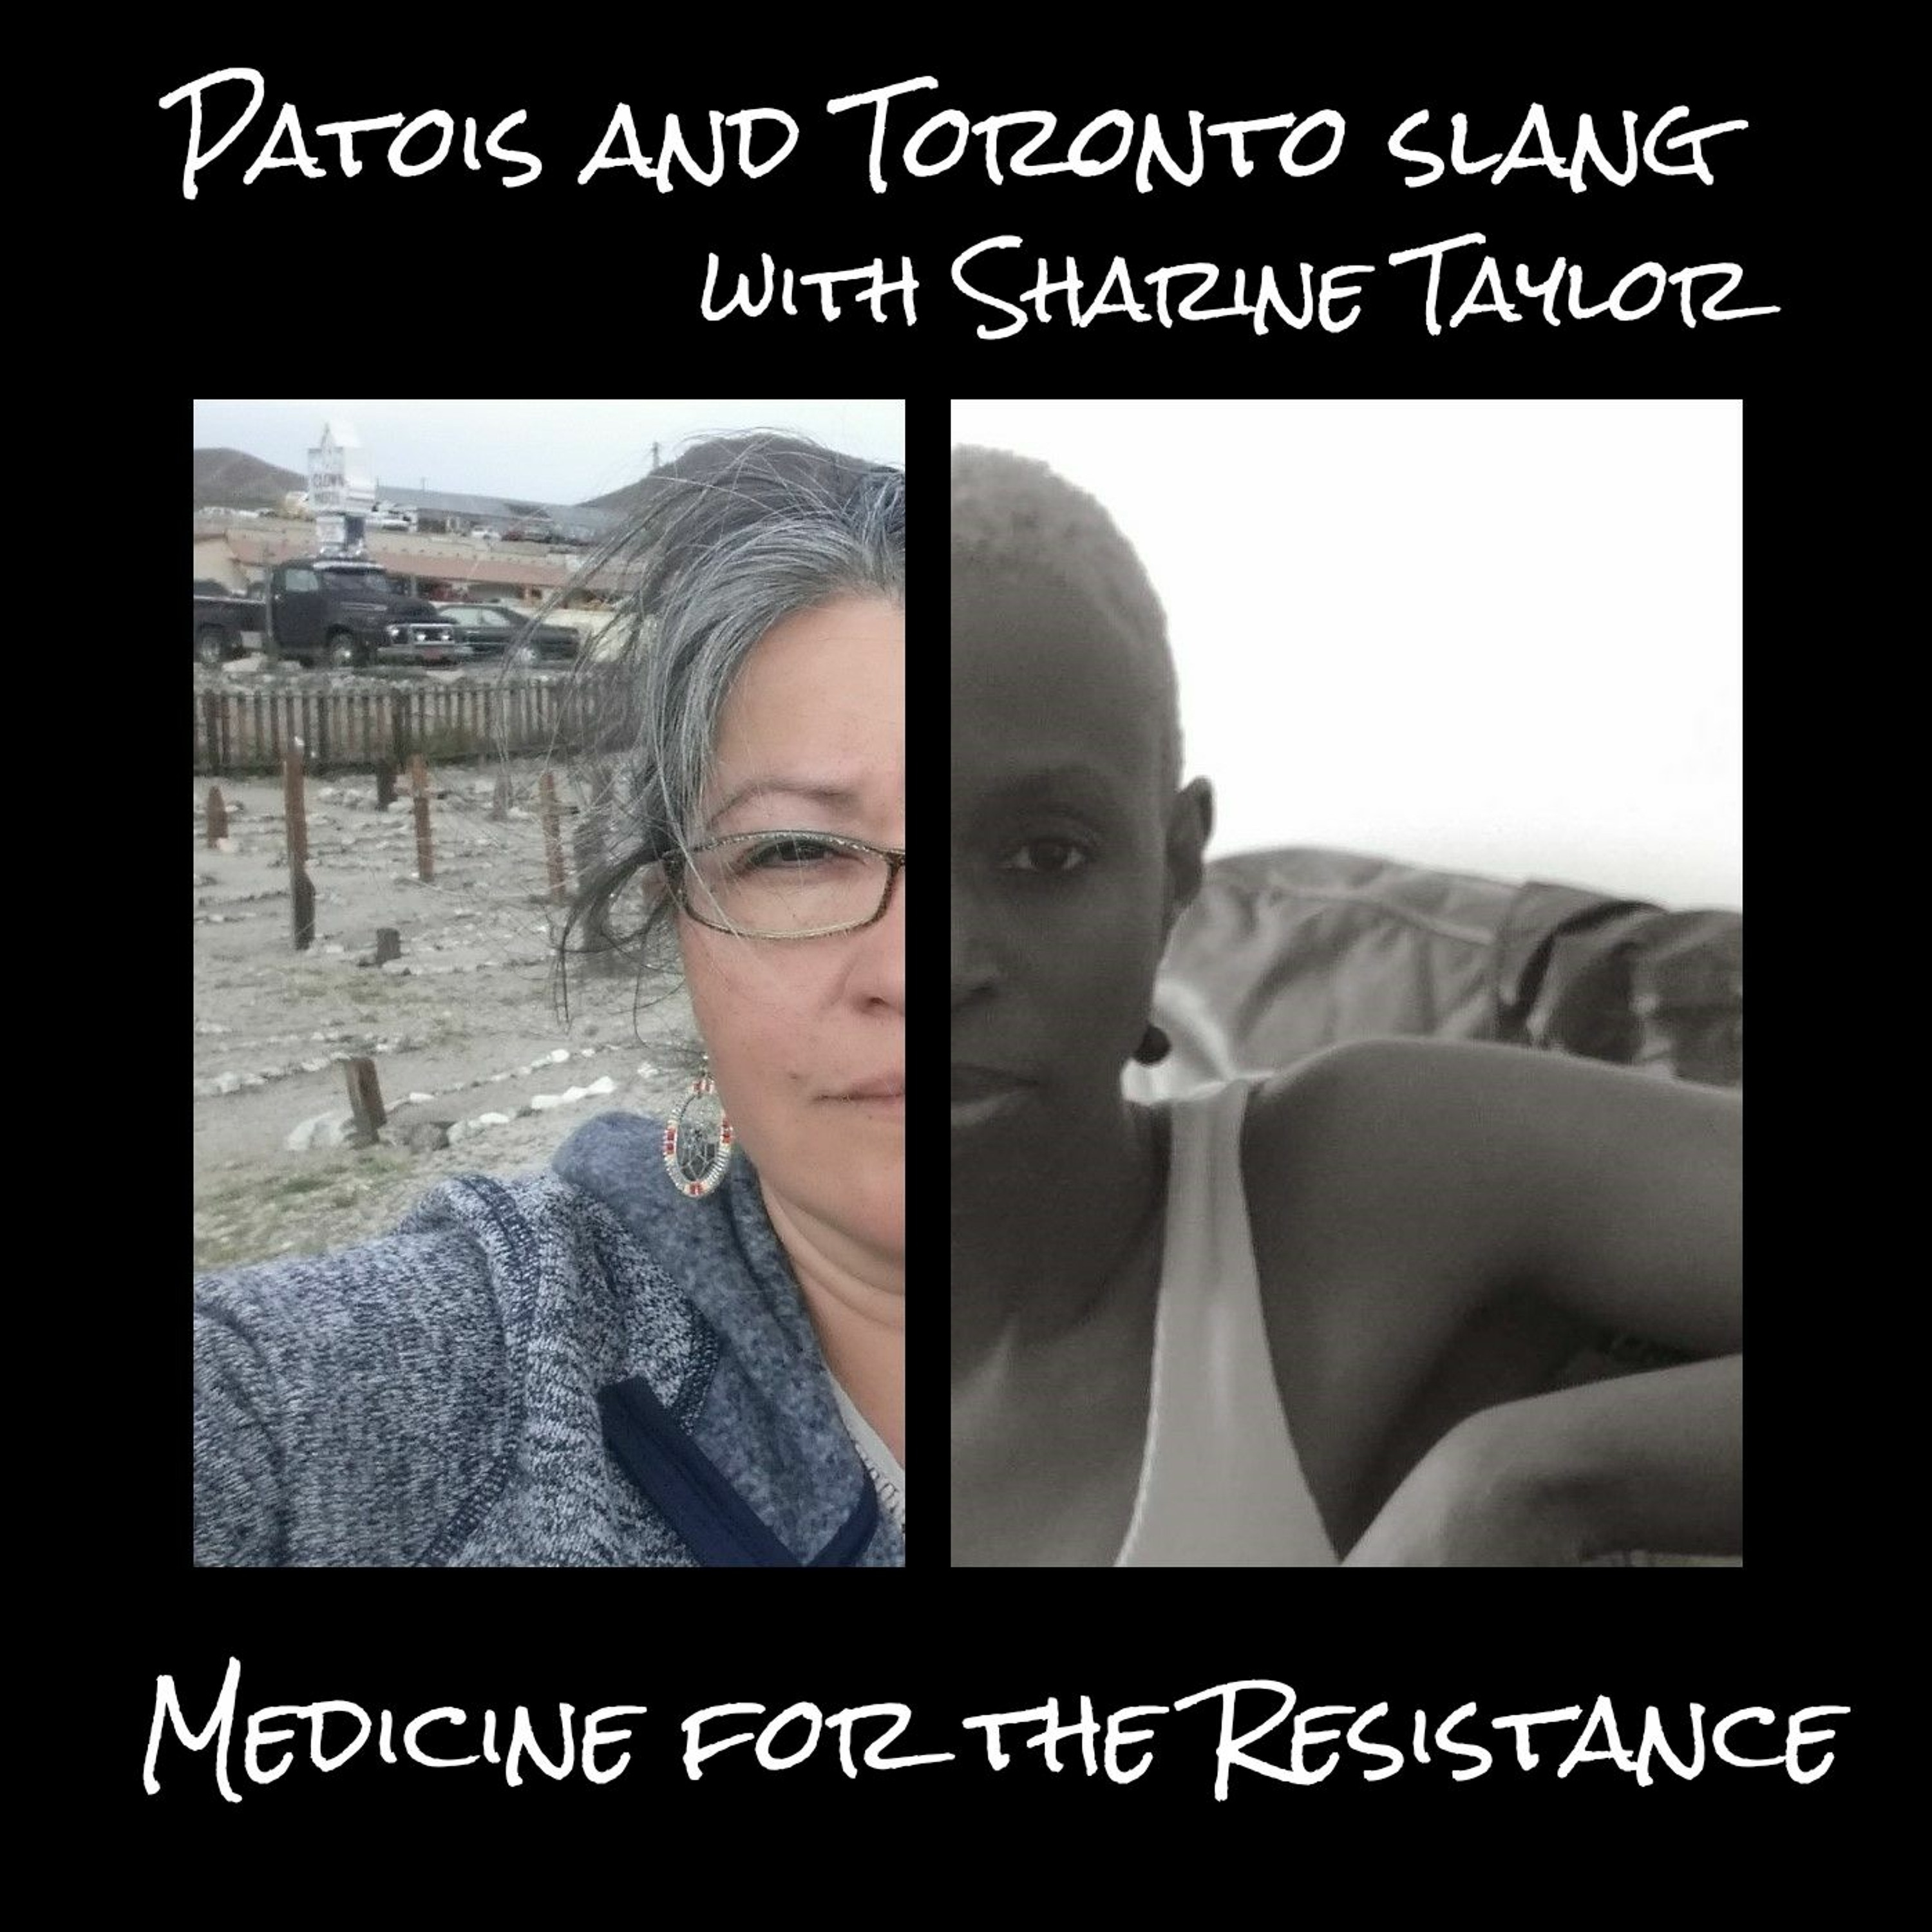 Jamaican Patois and Toronto Slang with Sharine Taylor